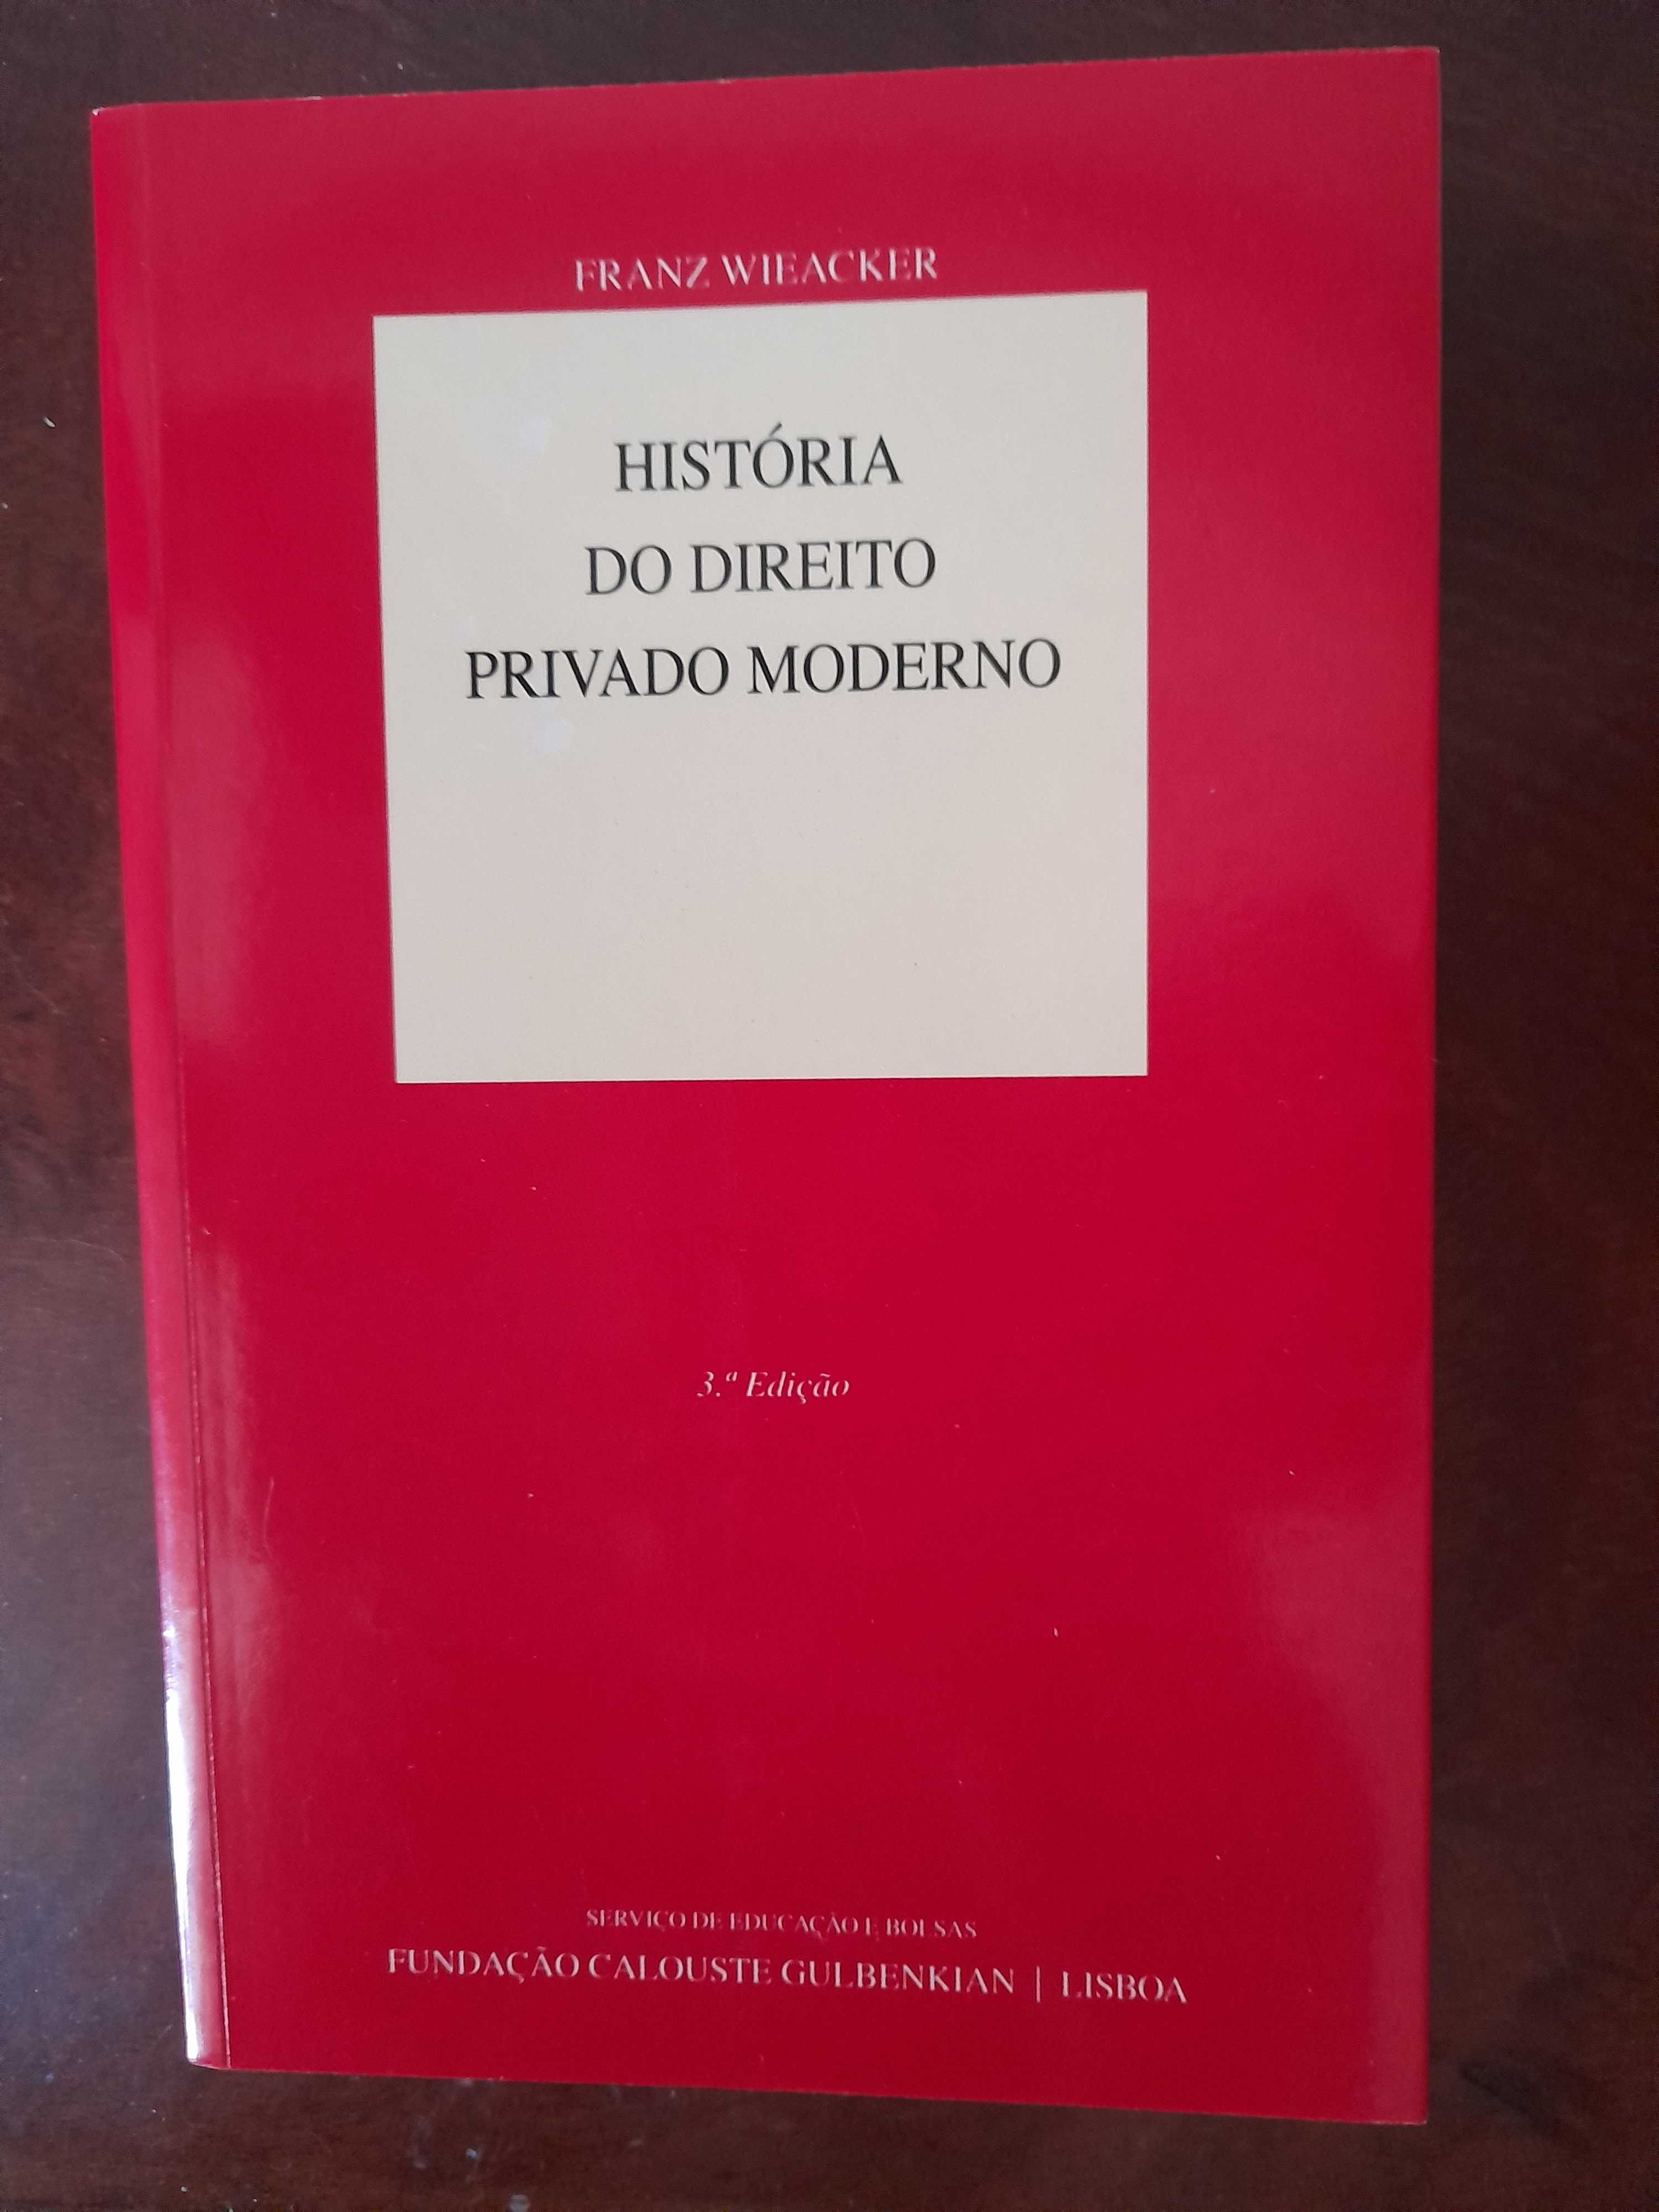 Livro "História Direito Privado Moderno", (3ª Edição)